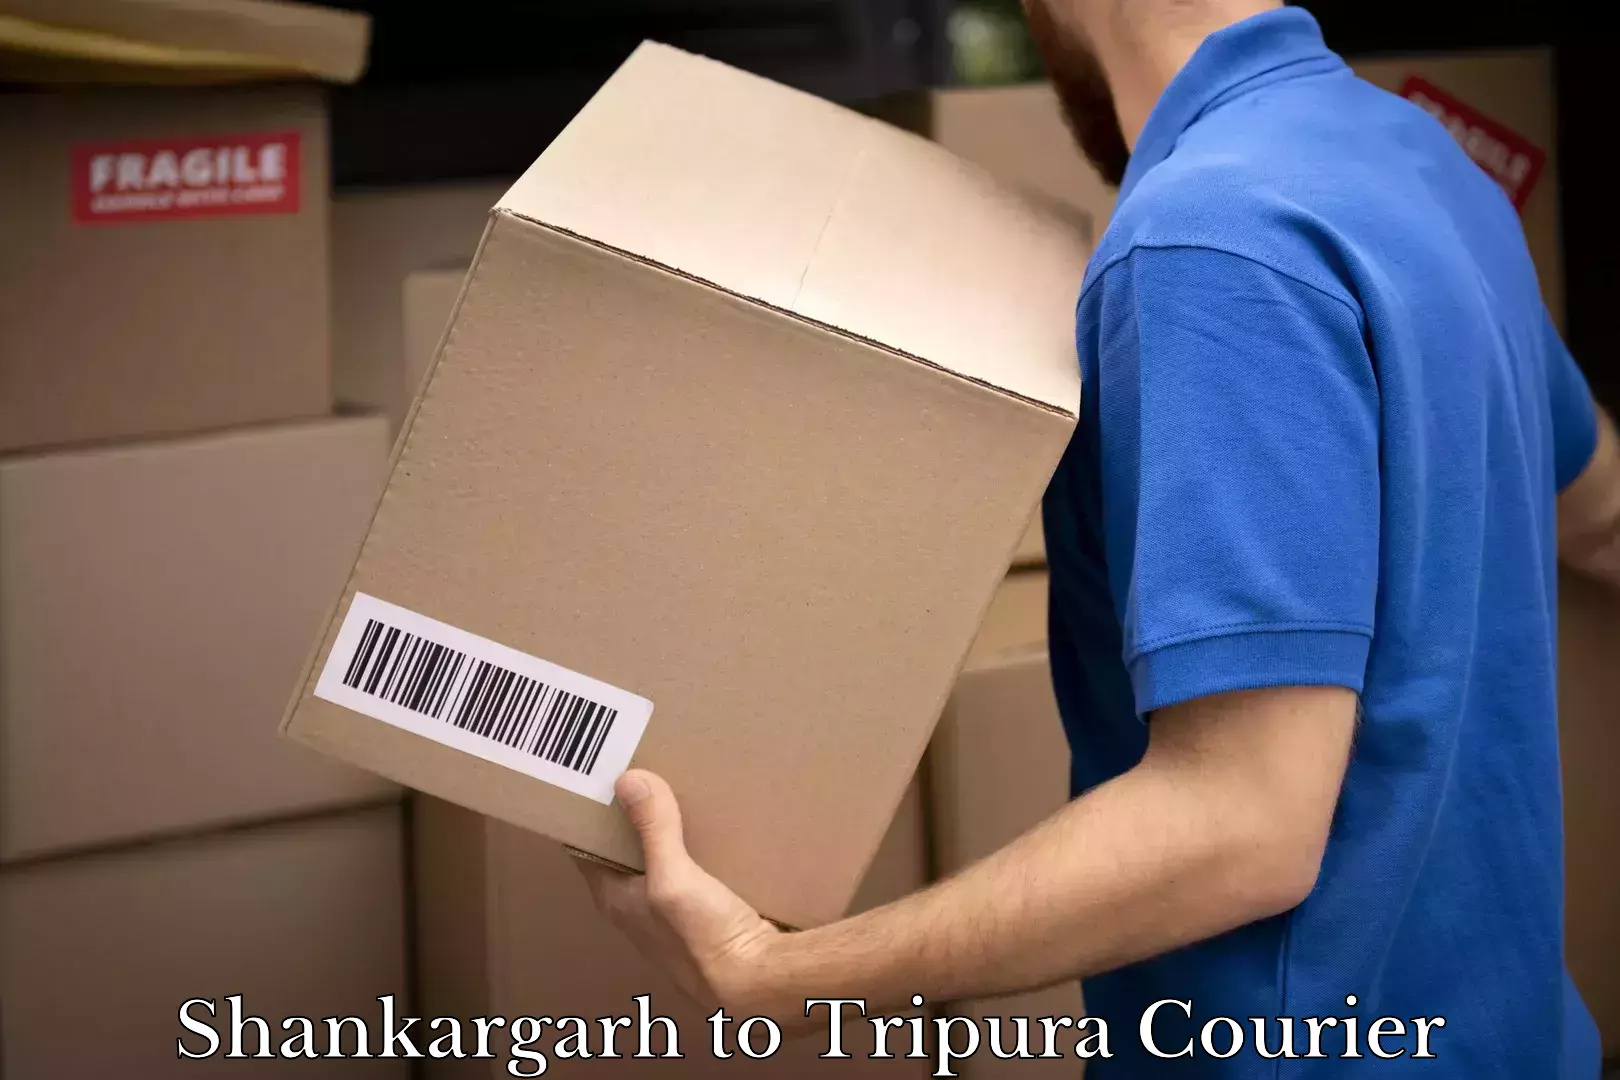 Weekend courier service Shankargarh to Tripura